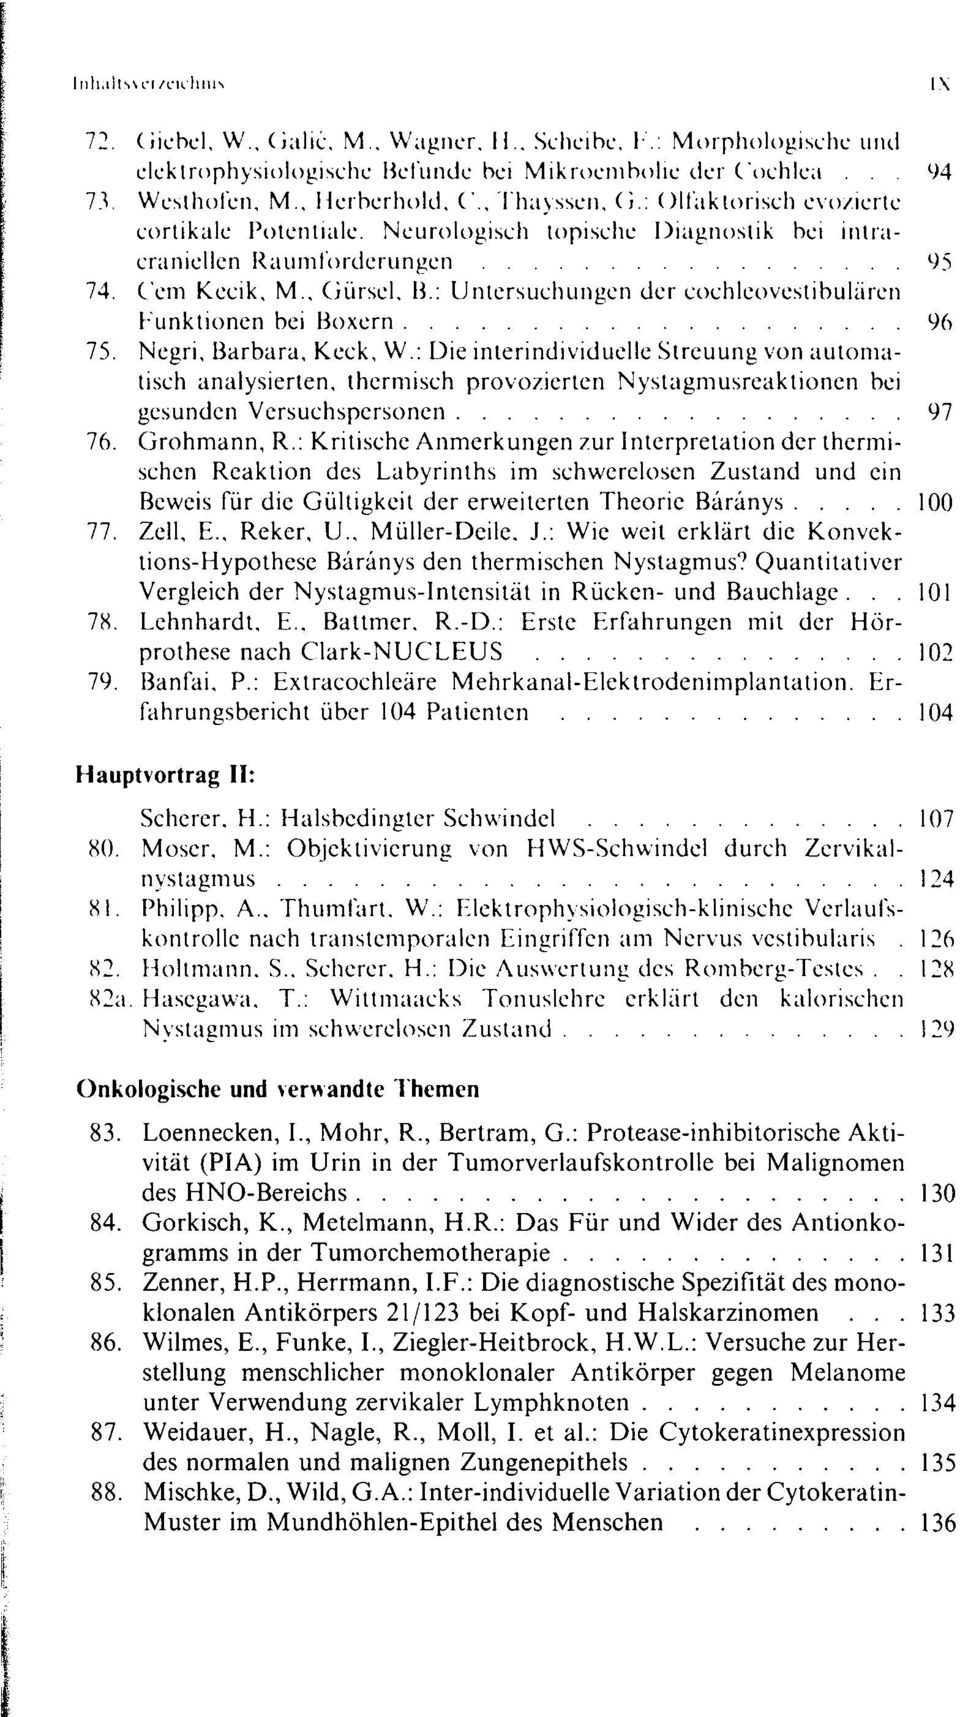 : Untersuchungen der cochleovestibulären Funktionen bei Boxern 96 75. Negri, Barbara, Keck, W.